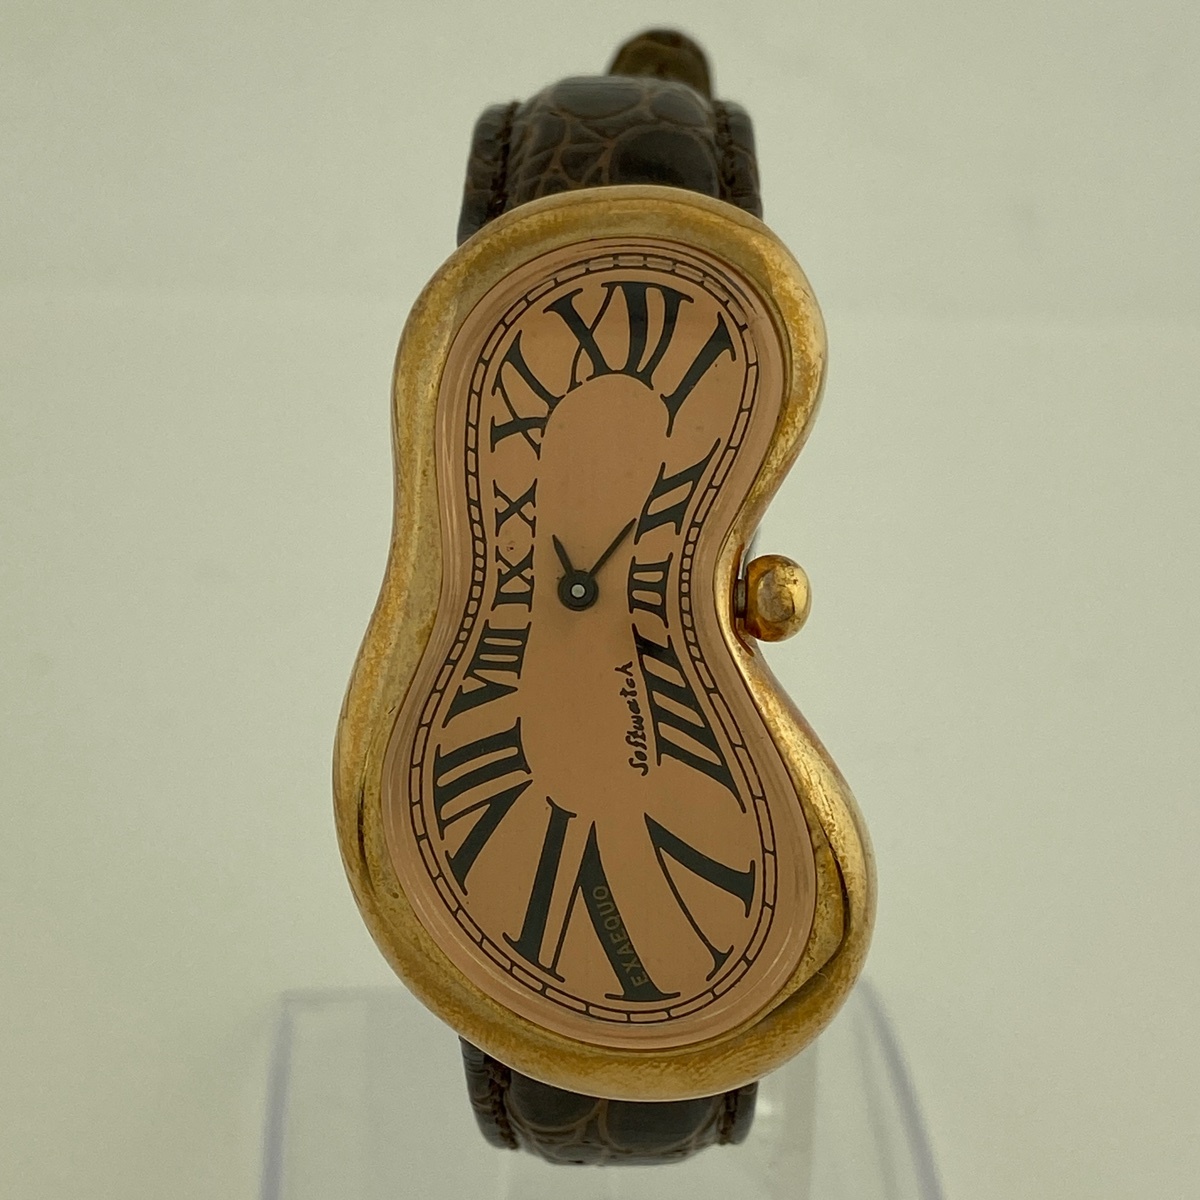 【ジャンク品】Soft Watch 美品 ザルバドール ダリ 記憶の固執 柔らかい時計 腕時計 クォーツ 【中古】の画像2